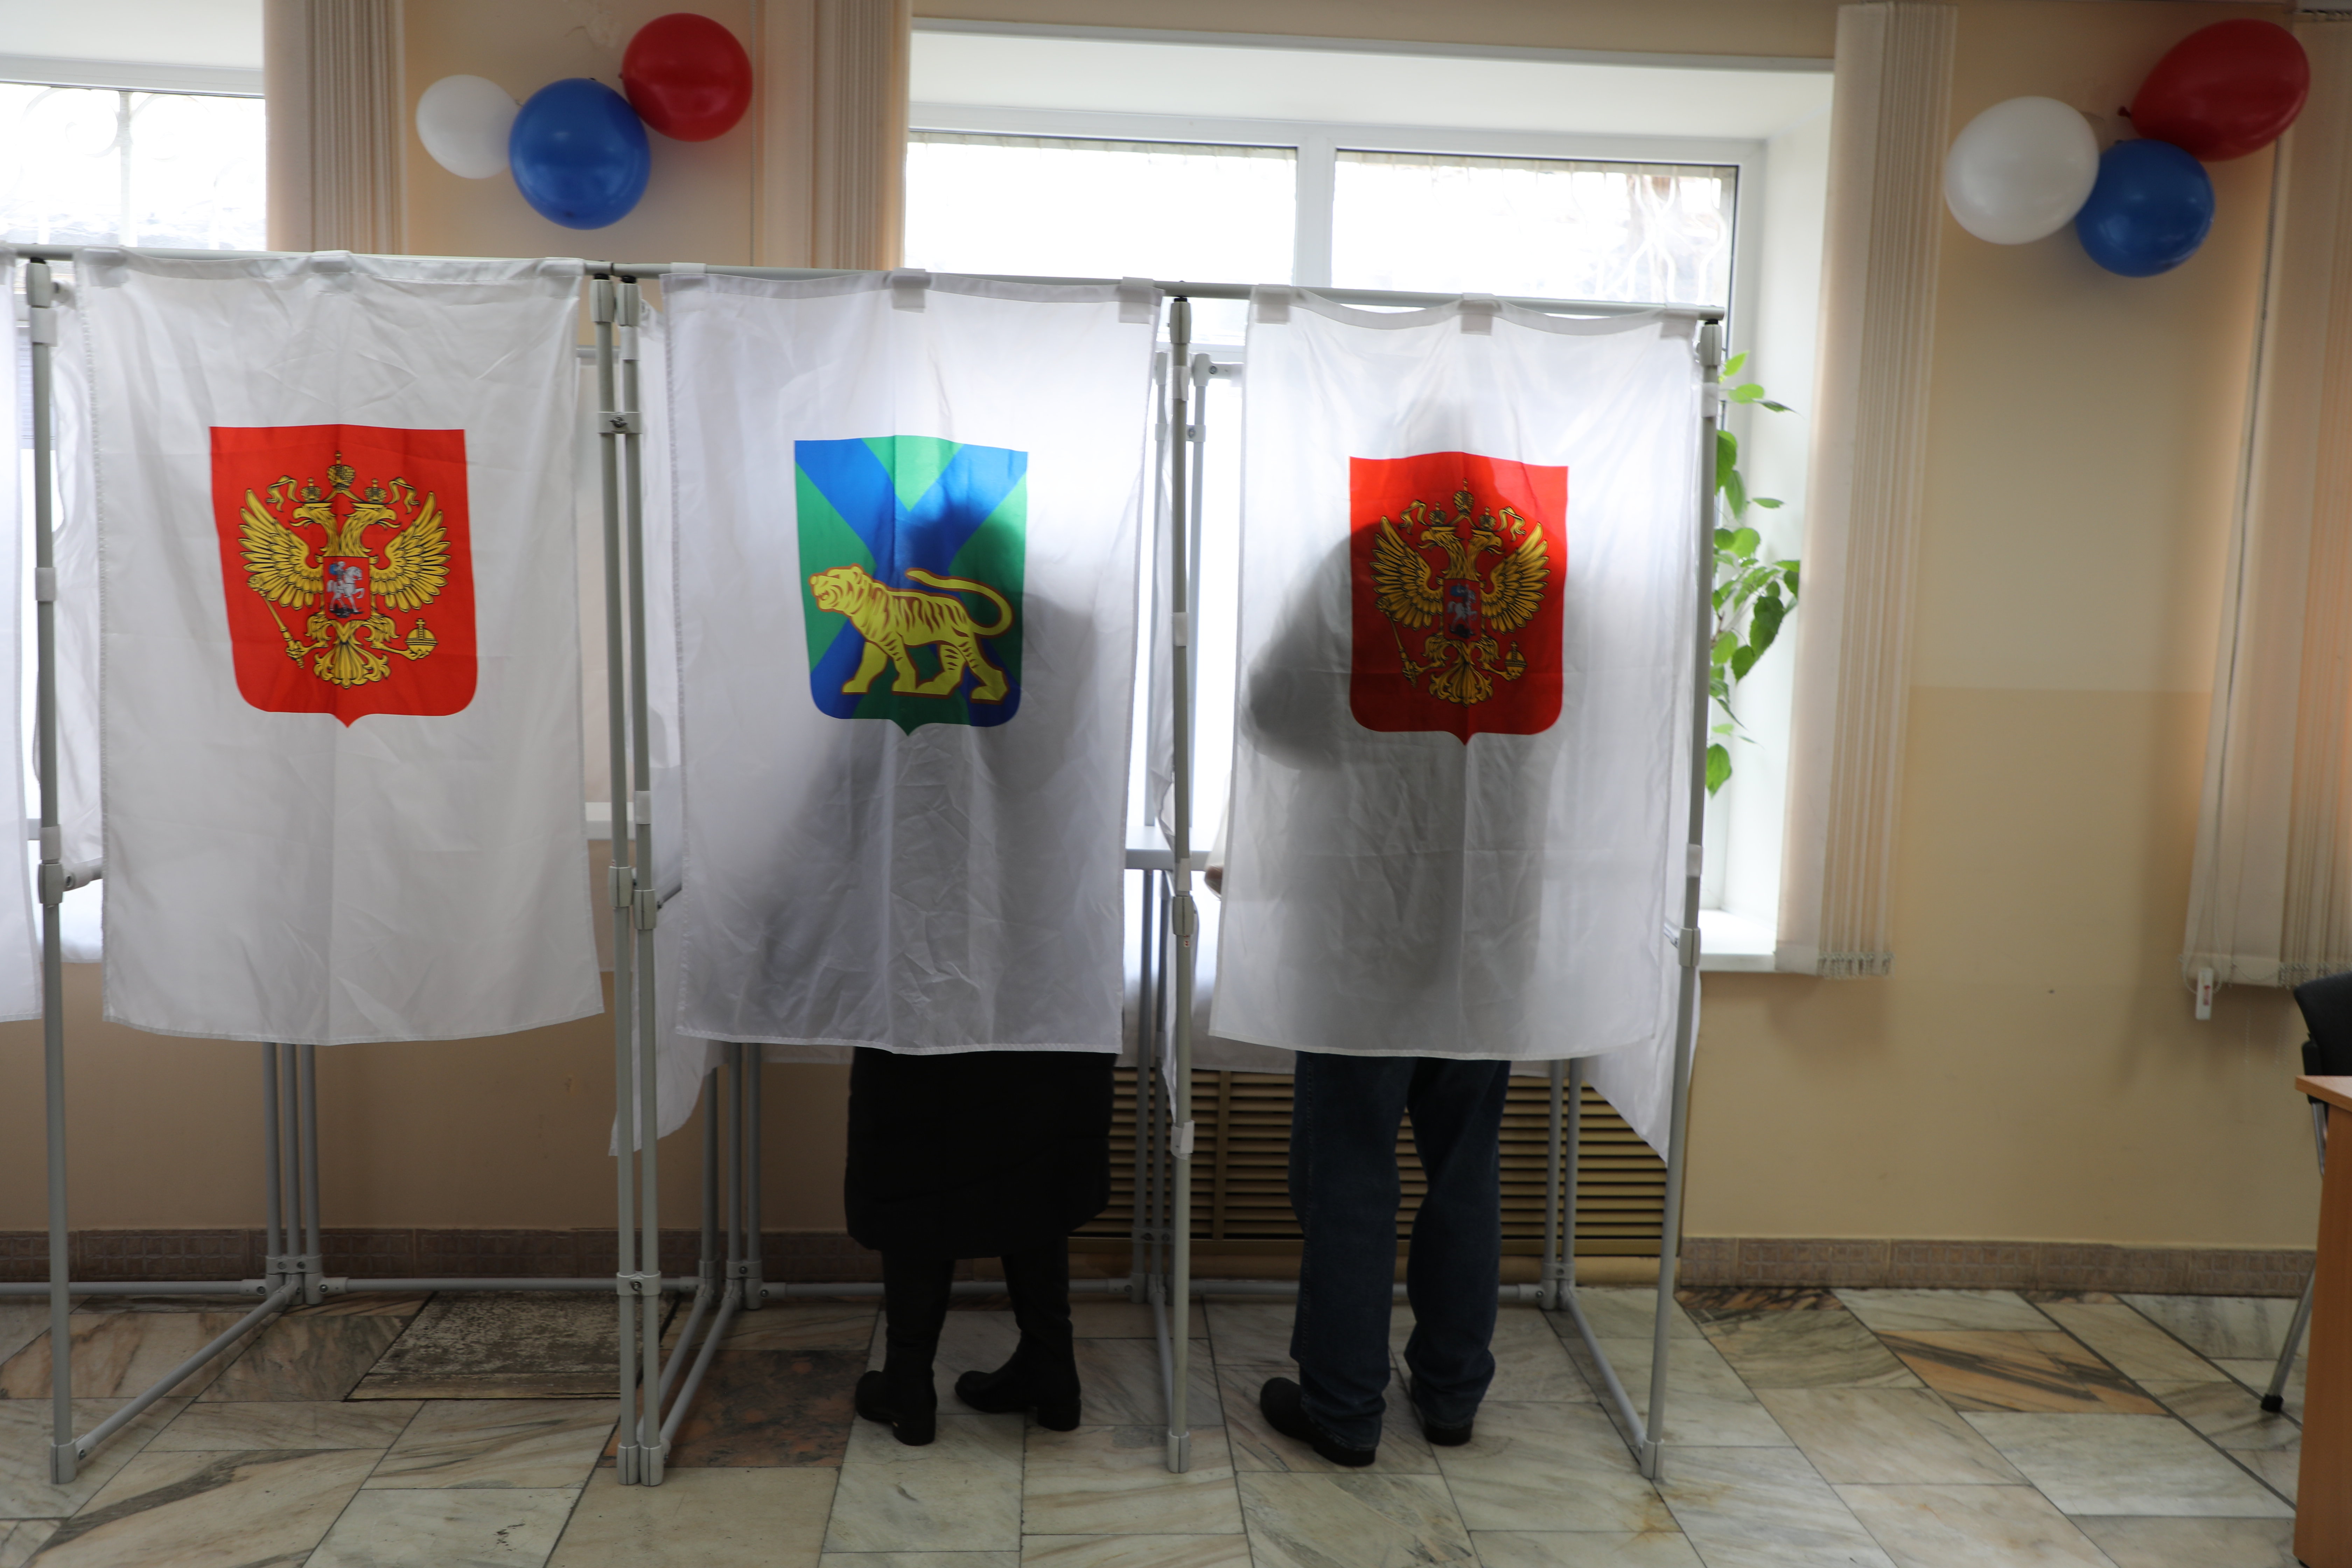 Явка на выборах президента в хабаровске